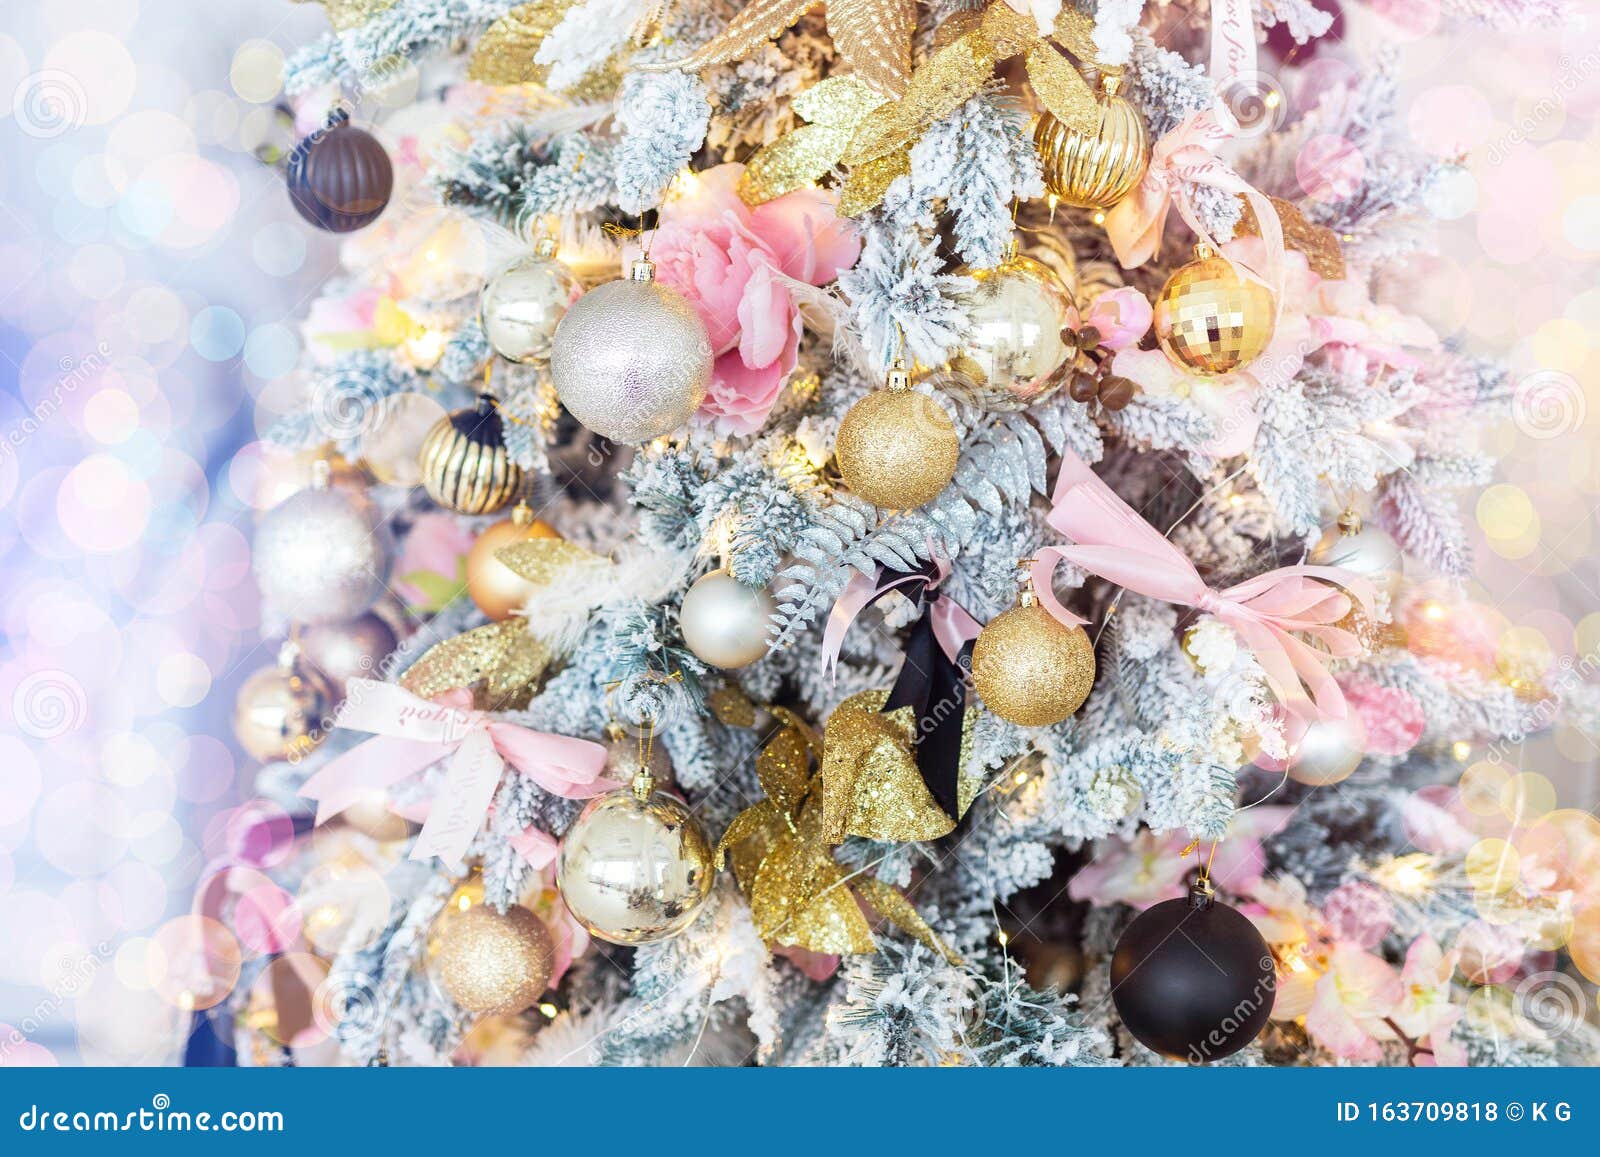 Árvore De Natal Decorada, Cor-de-rosa Brilhante E Fechada, Com Luzes,  Fitas, Bolas E Bolas No Interior De Casa Decoração De Natal Foto de Stock -  Imagem de agulha, ornamento: 163709818